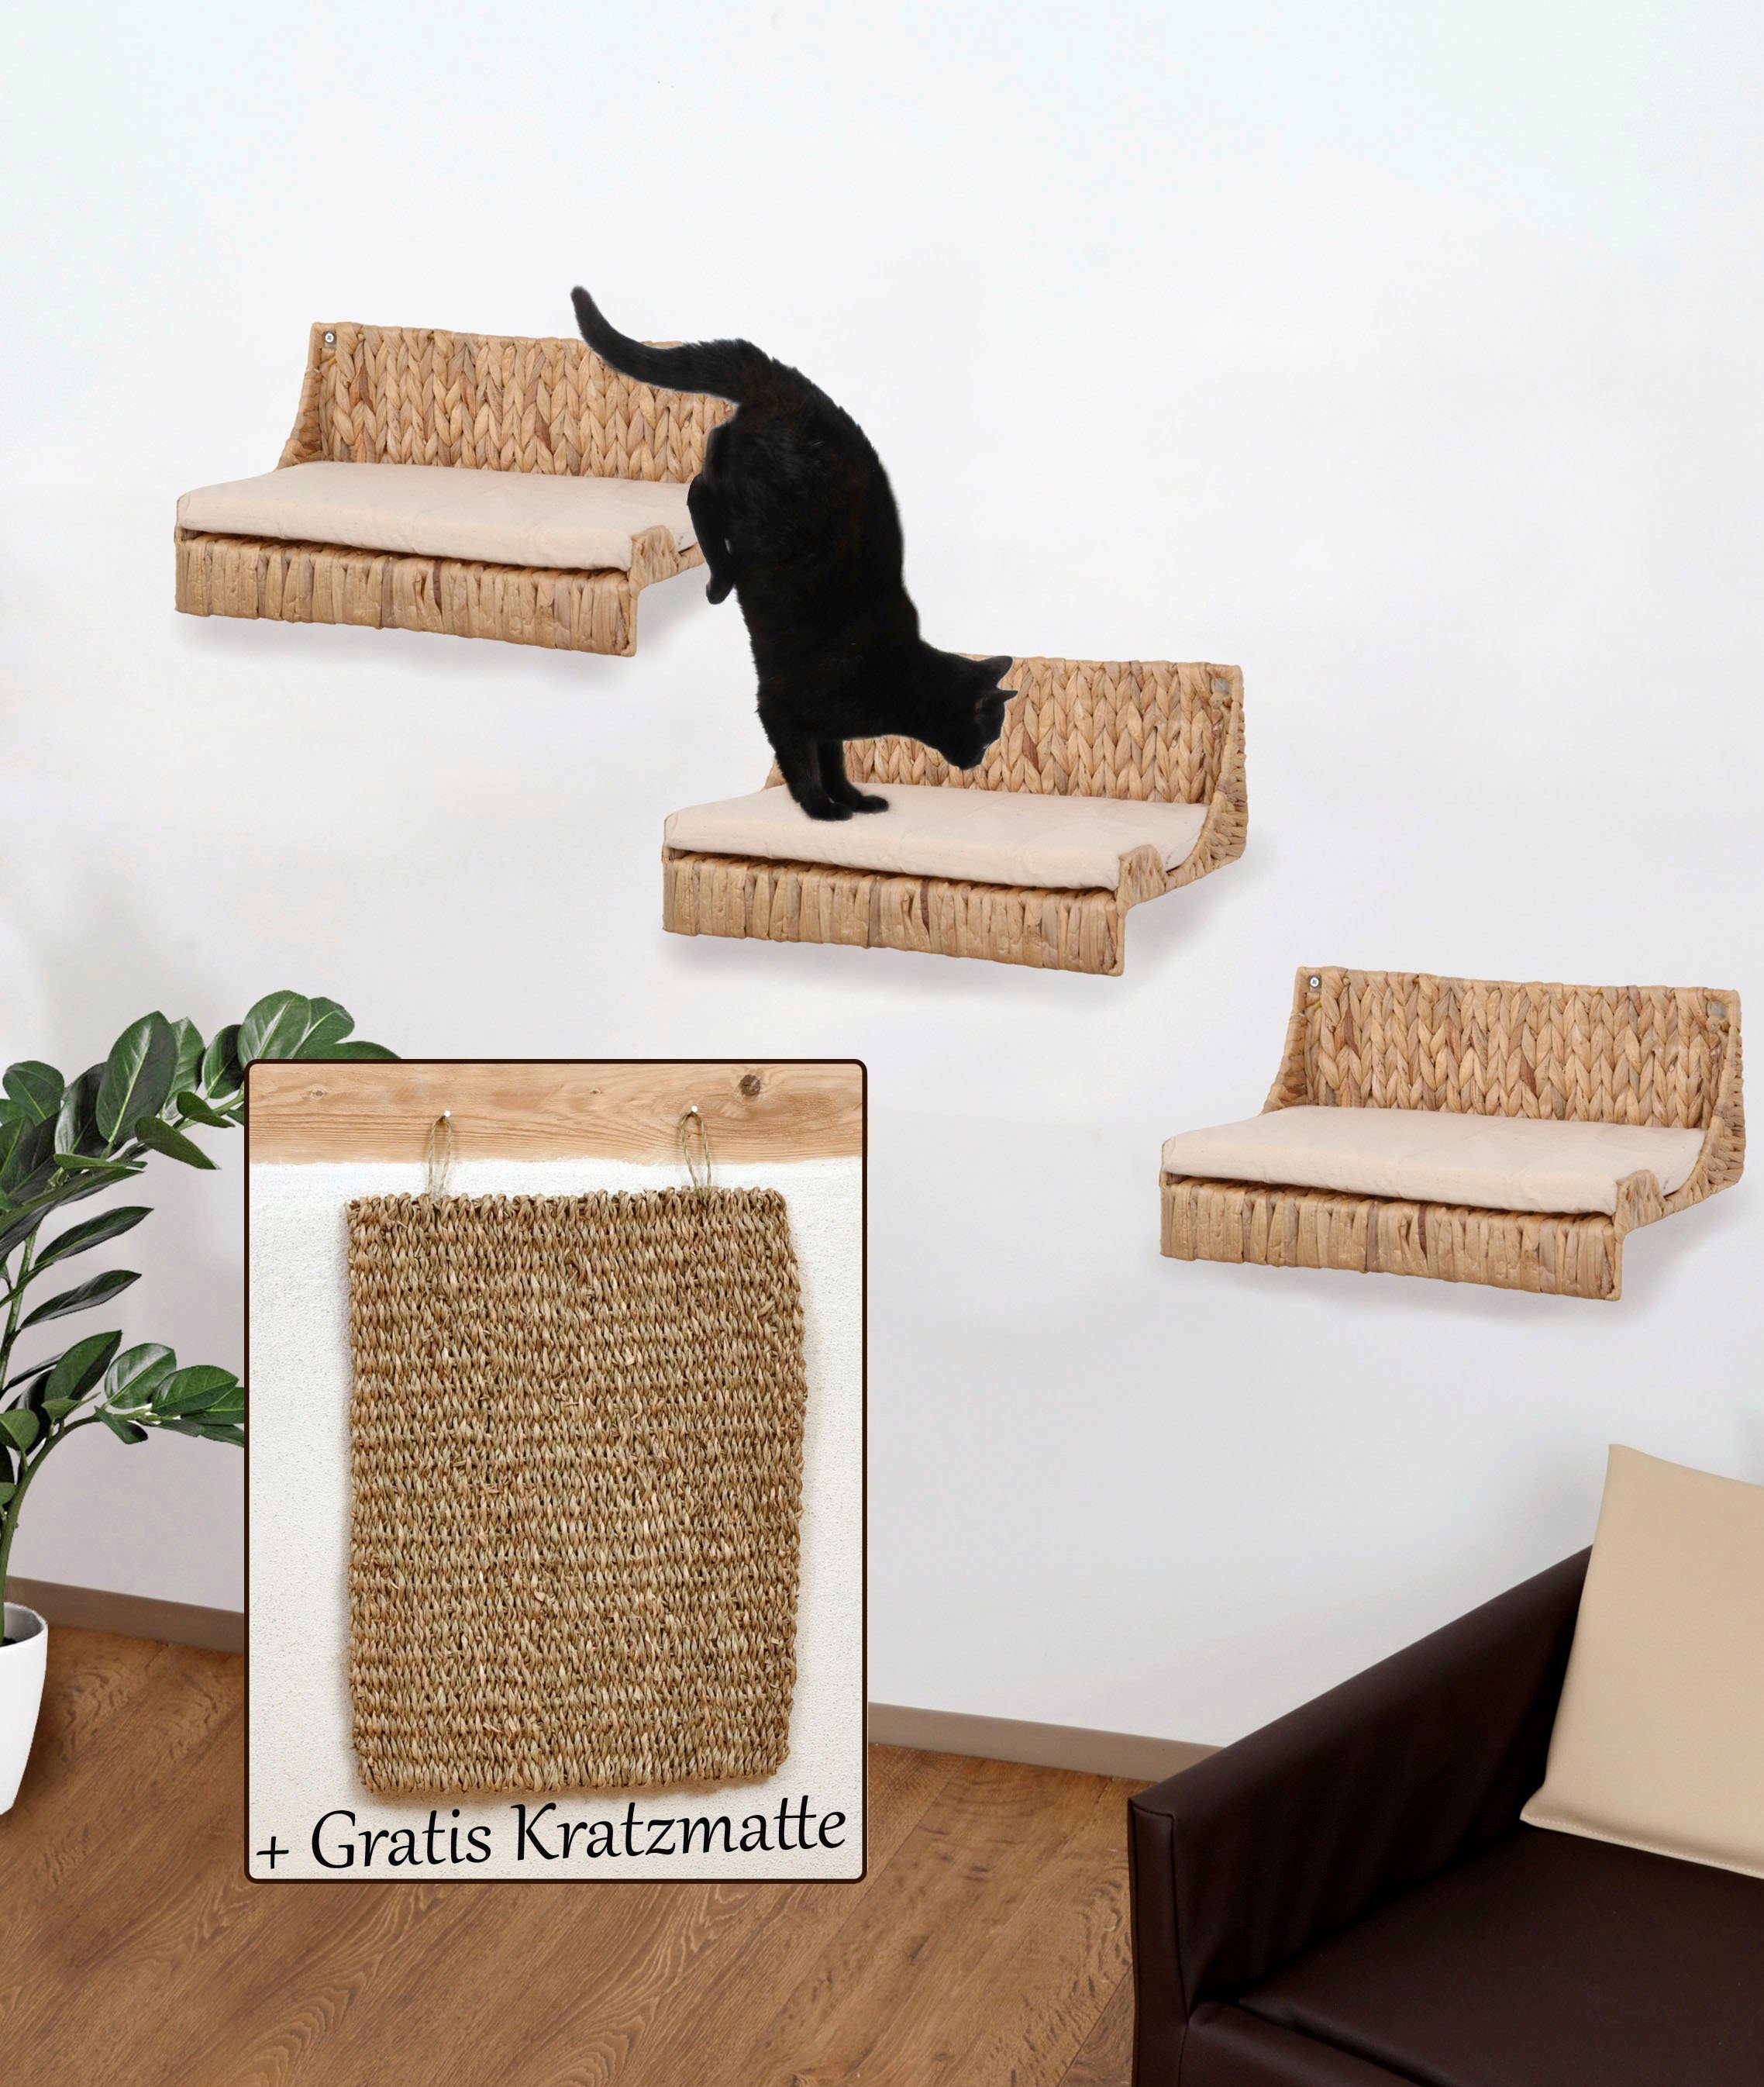 ABUKI Katzen-Wandregal Fenja, LxBxH: 40x25x15 cm, Kissenbezug aus Baumwolle, gratis Kratzmatte